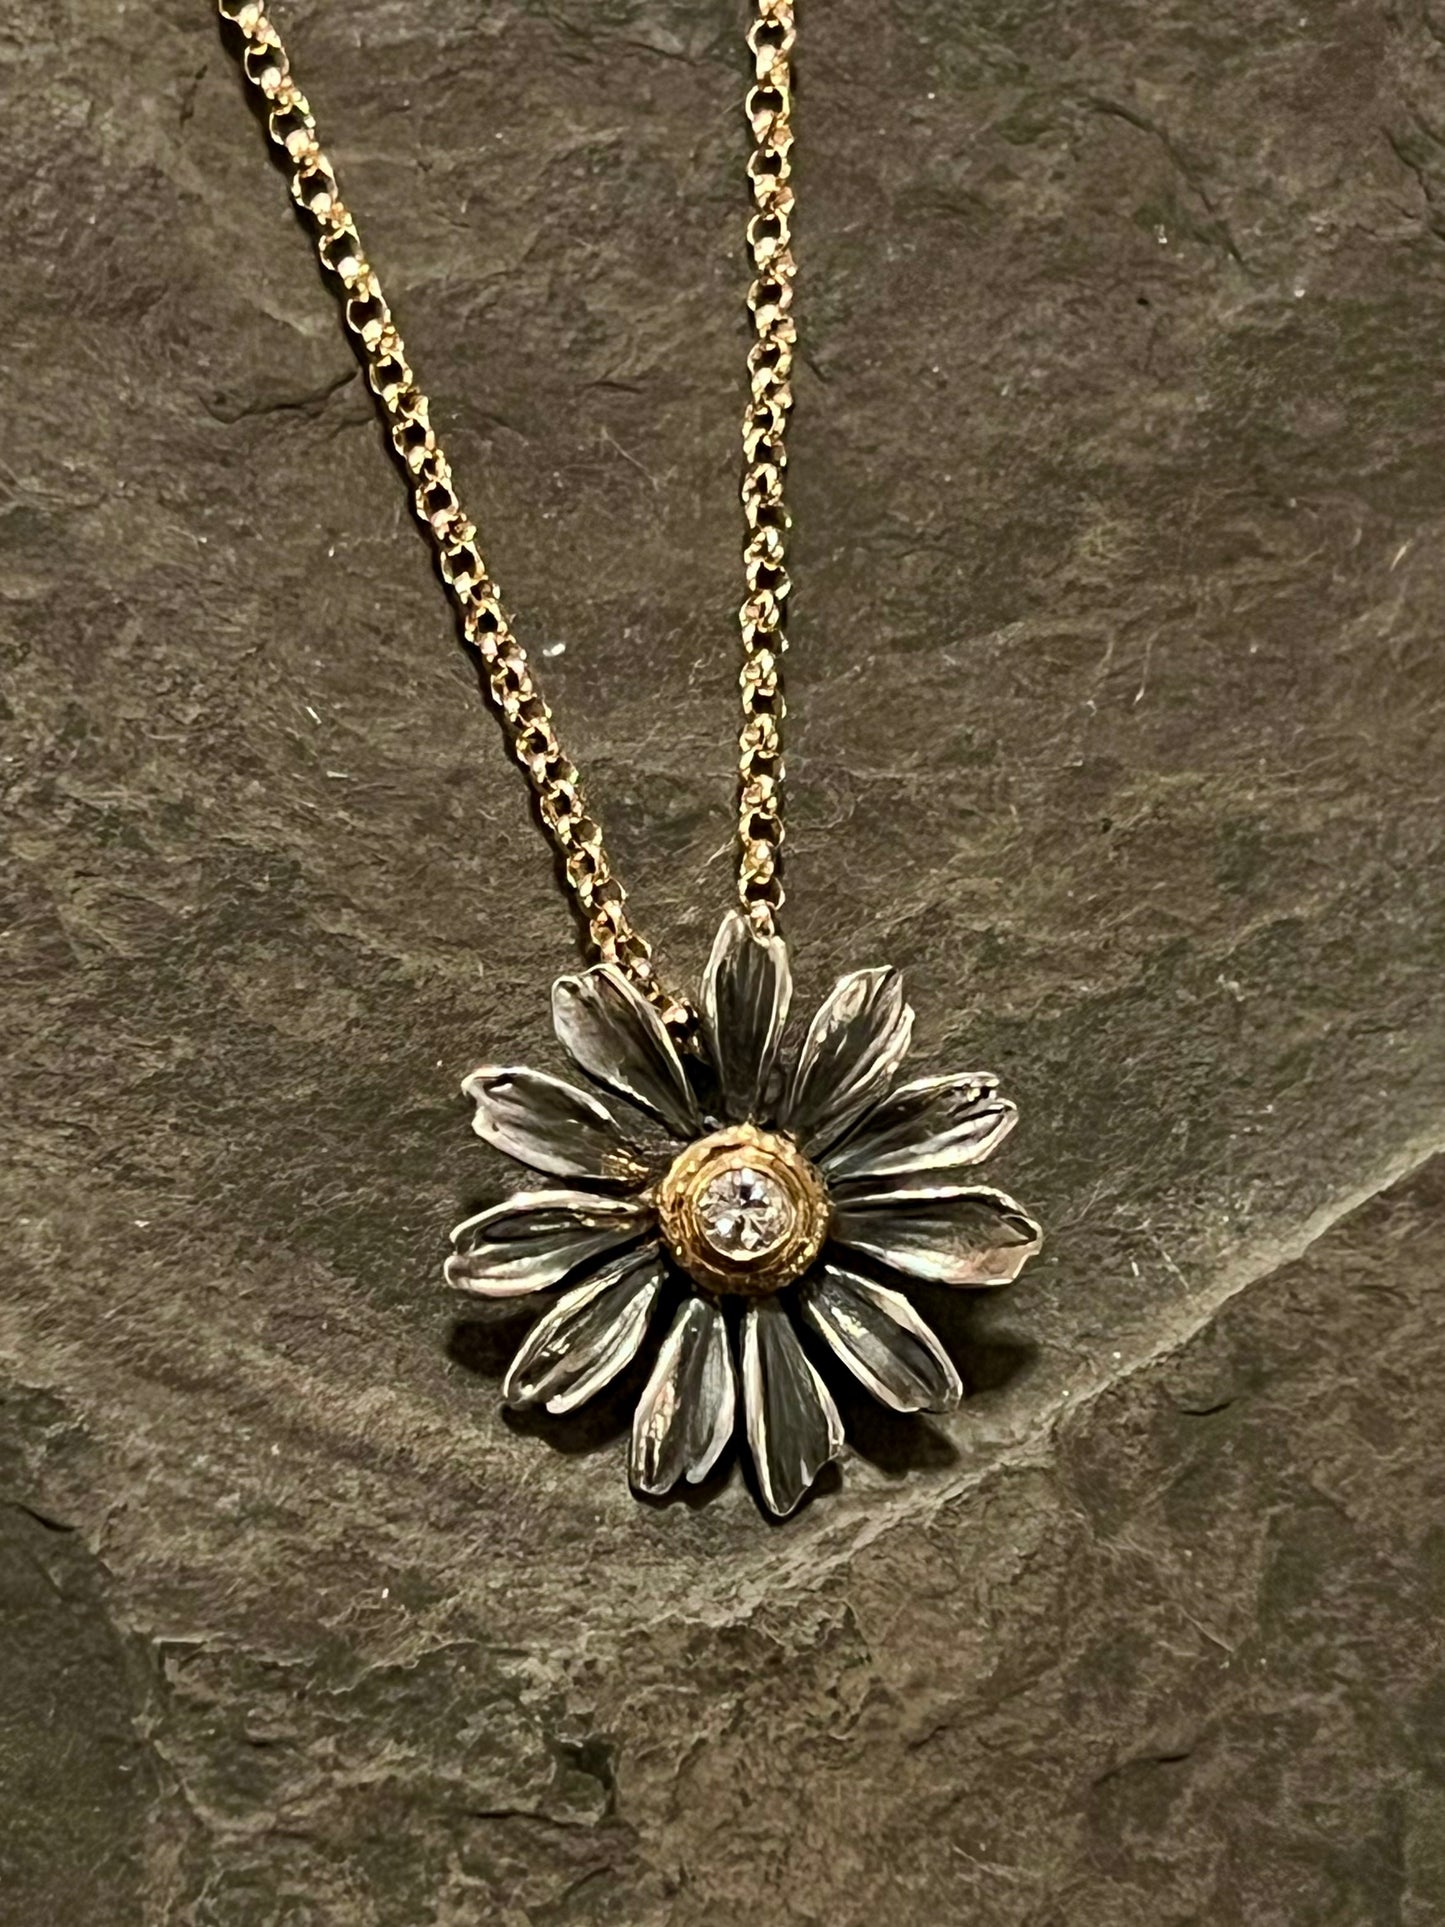 Diamond Daisy Girl Necklace, 14K Chain